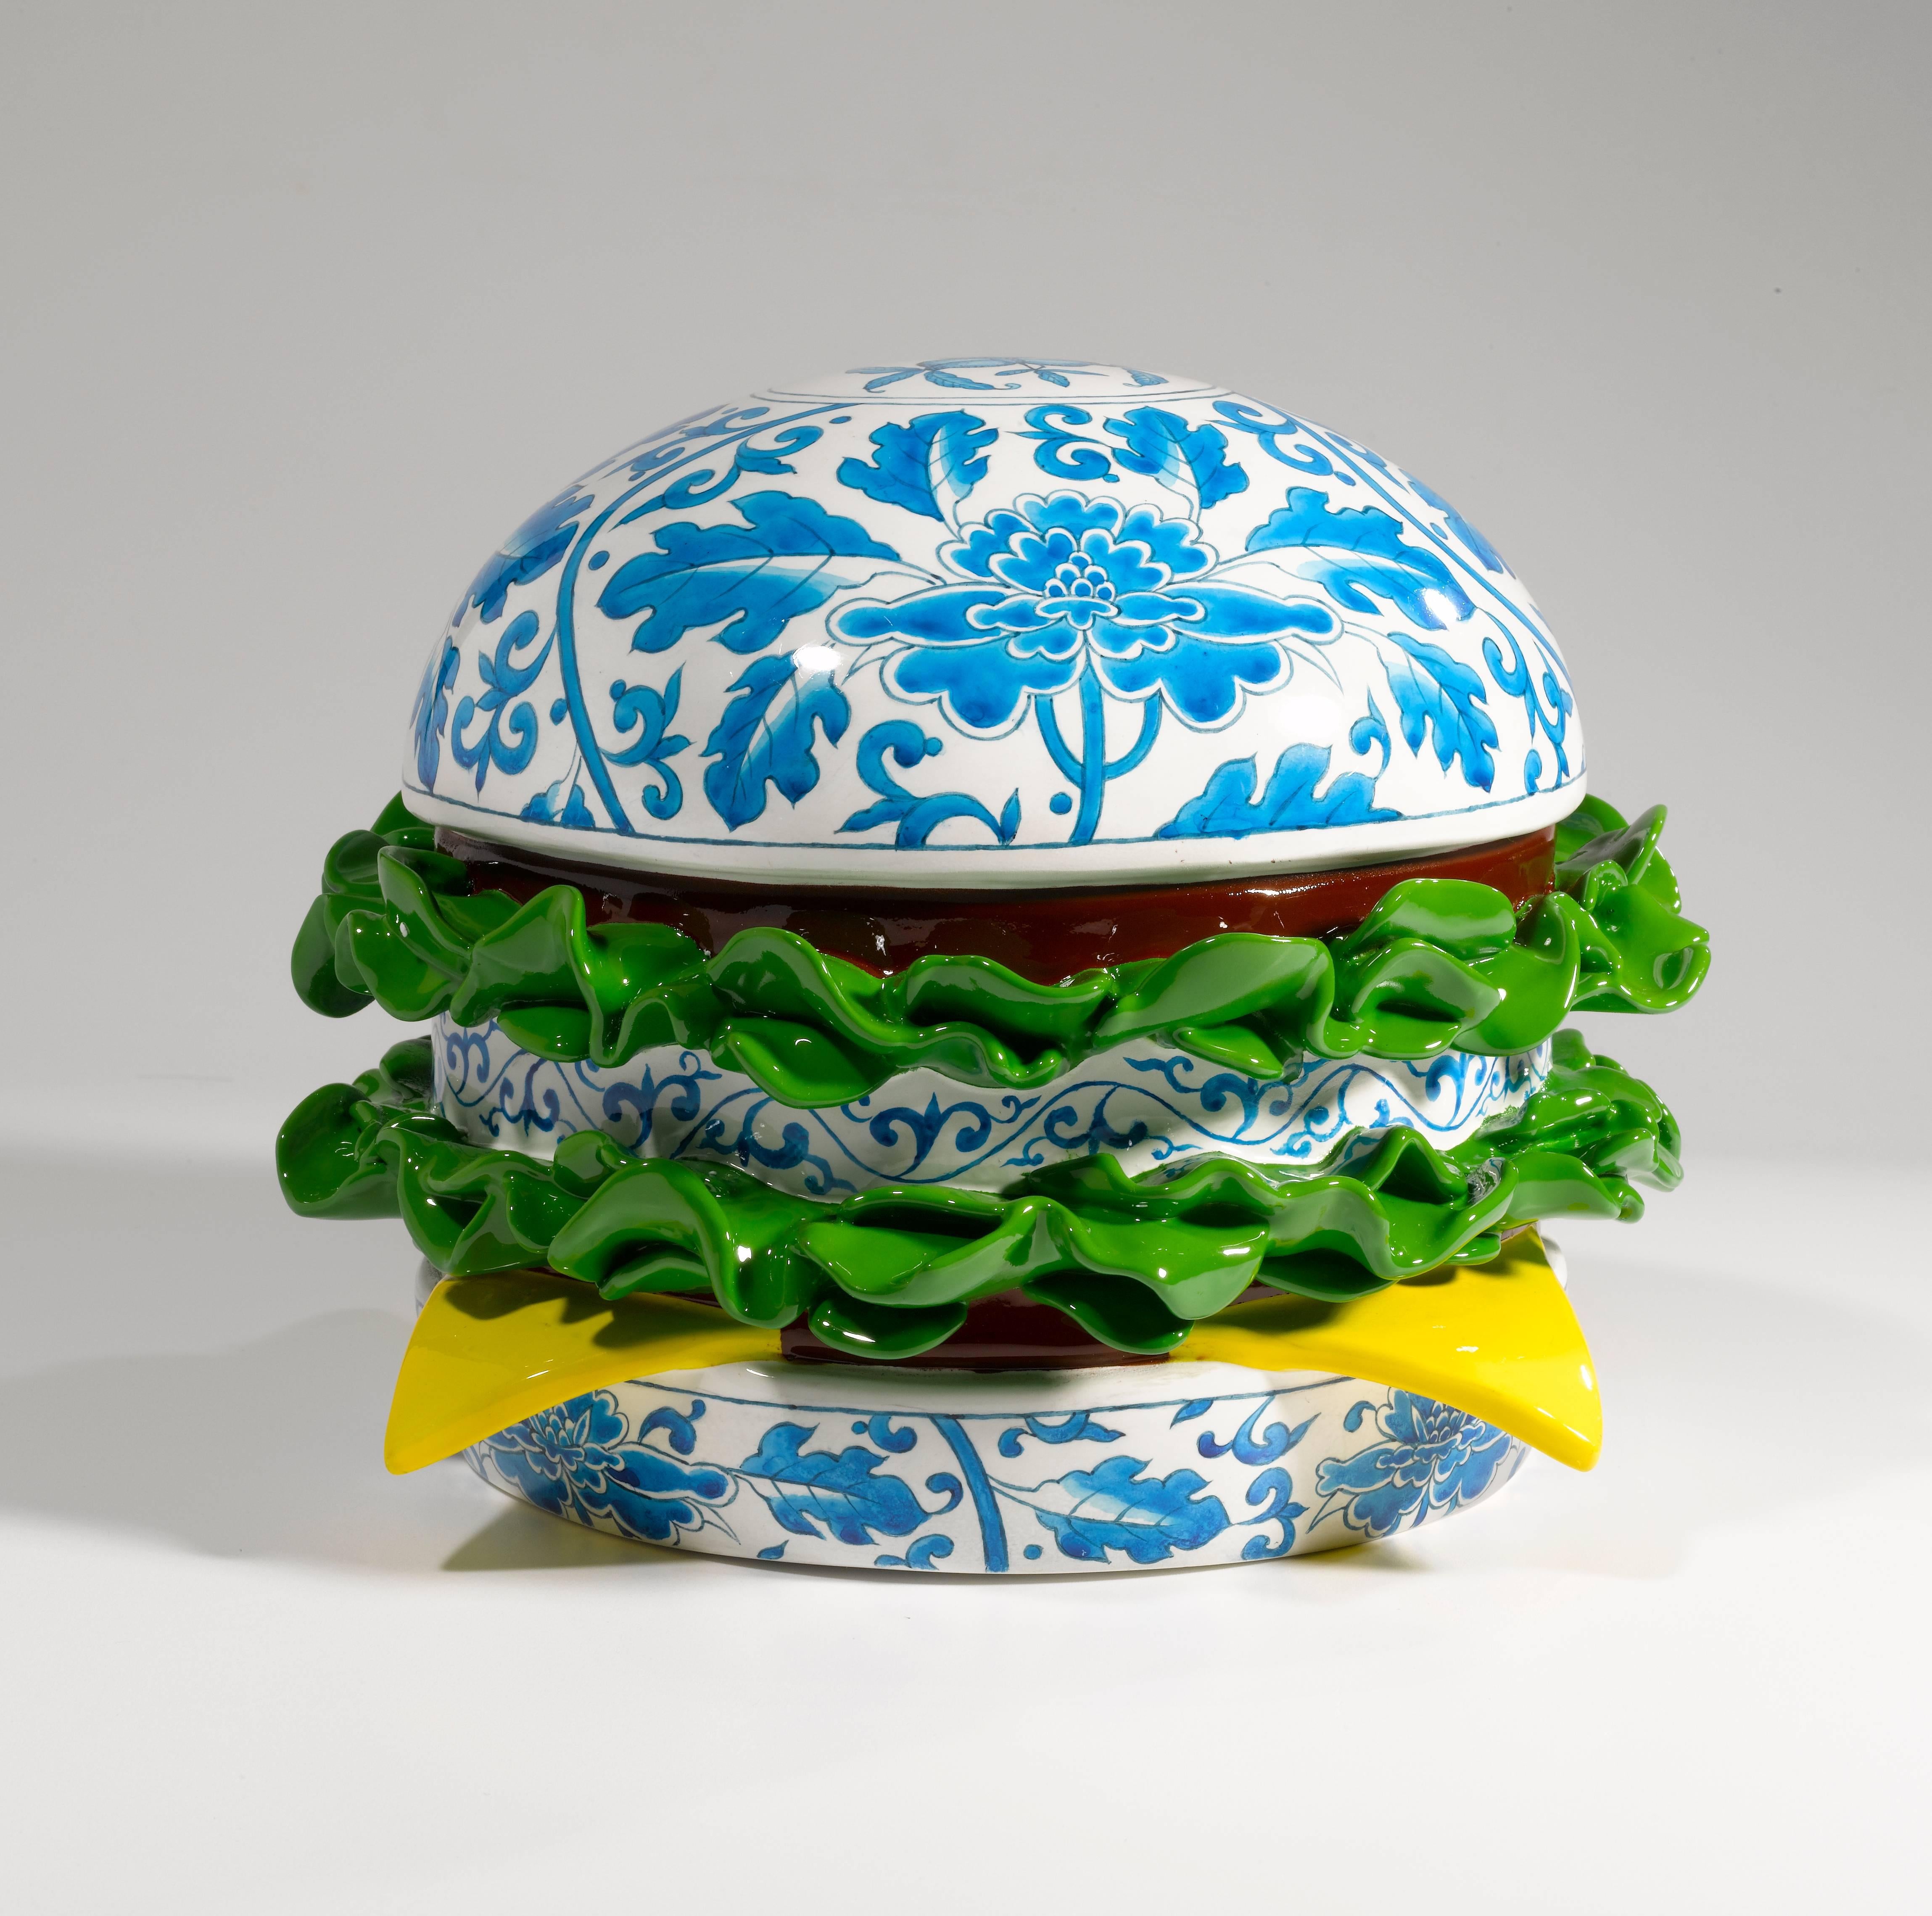 Song Wei Abstract Sculpture - Hamburger